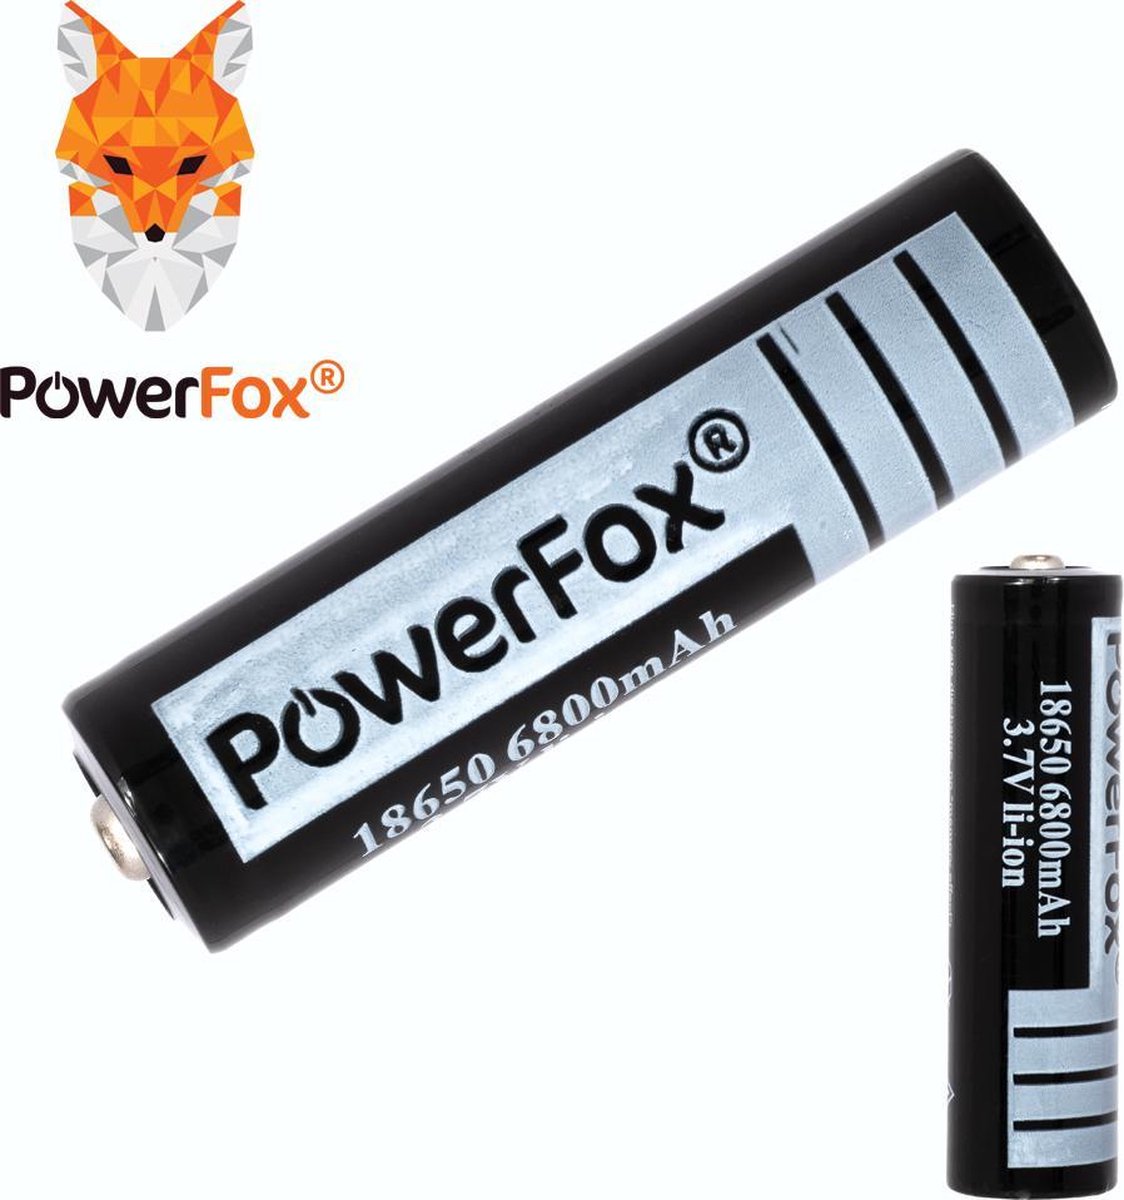 PowerFox® 1x 18650 Lithium batterij 3,7V 6800mAh oplaadbare batterij zwart